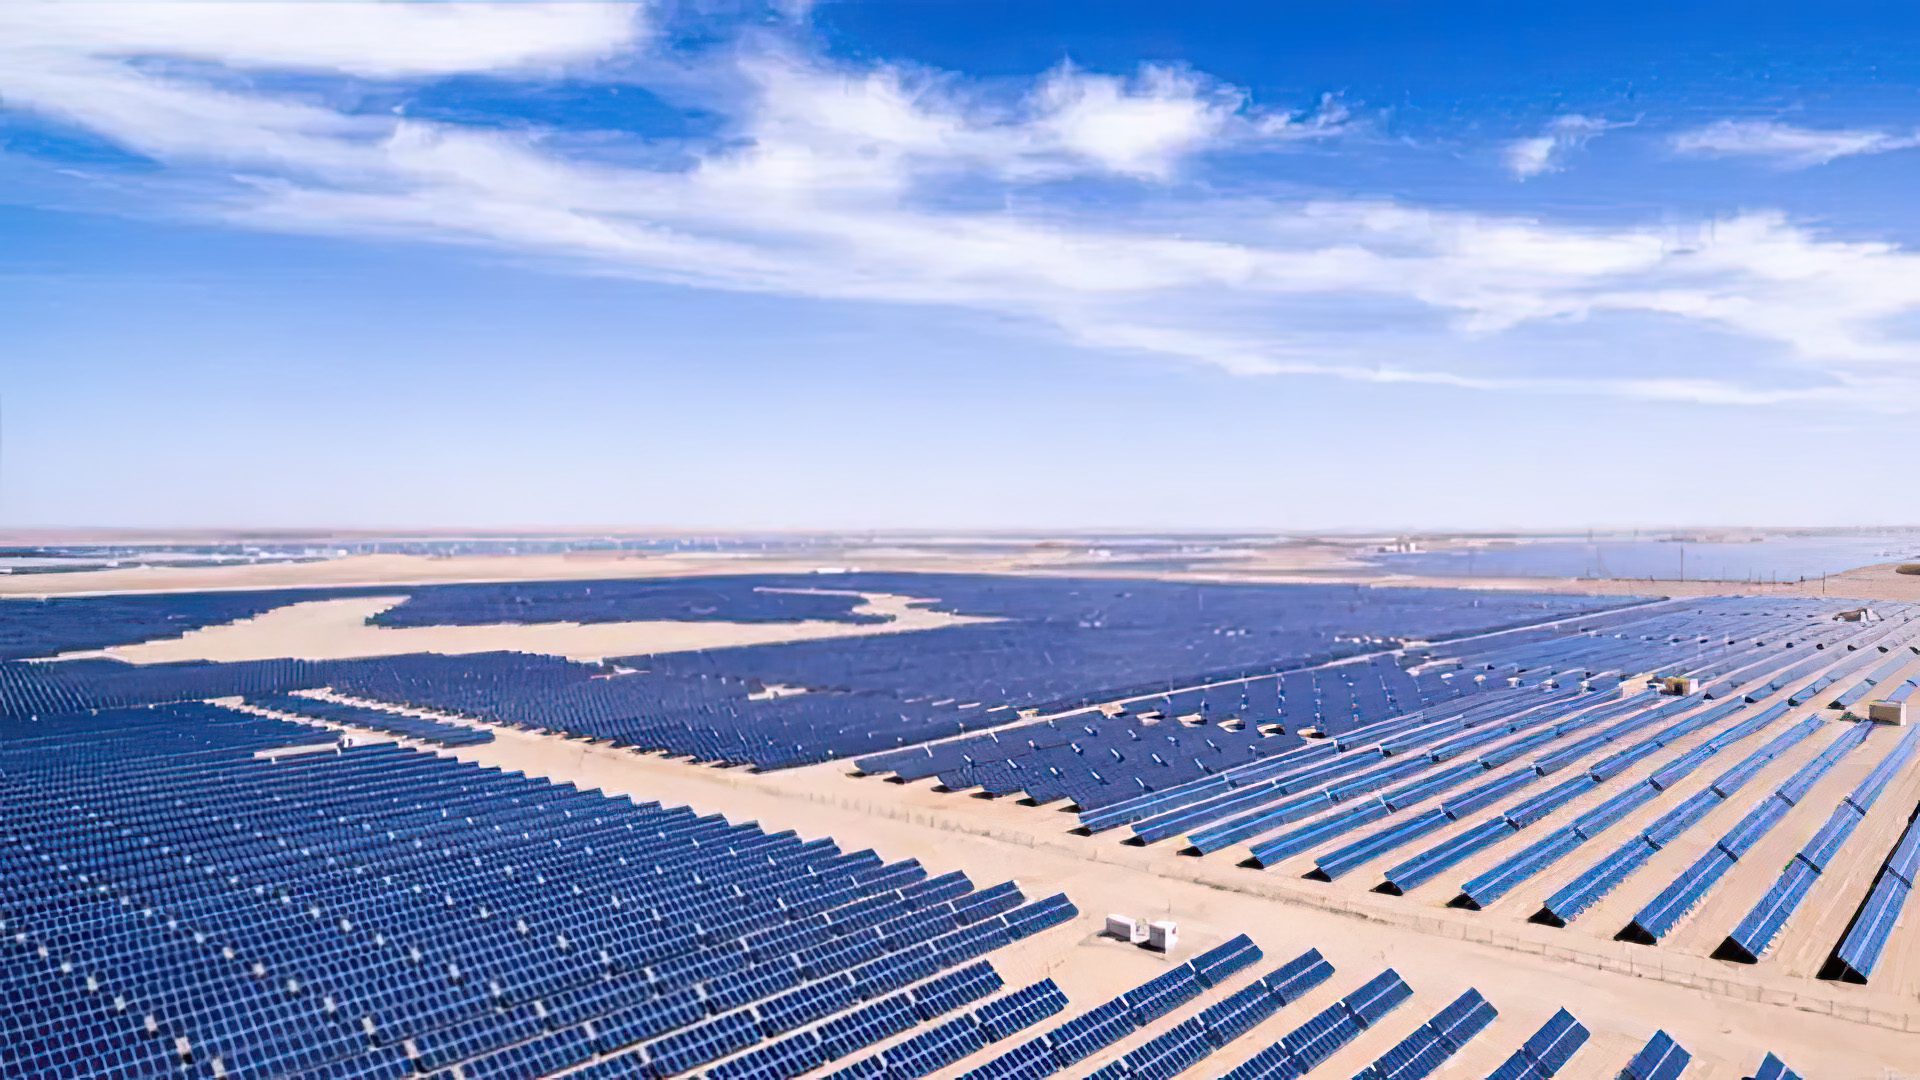 Lokalizacja: Benban, Egipt; Moc szczytowa: 1650 MW; Największa elektrownia słoneczna w Egipcie (fot. afrik21.africa).